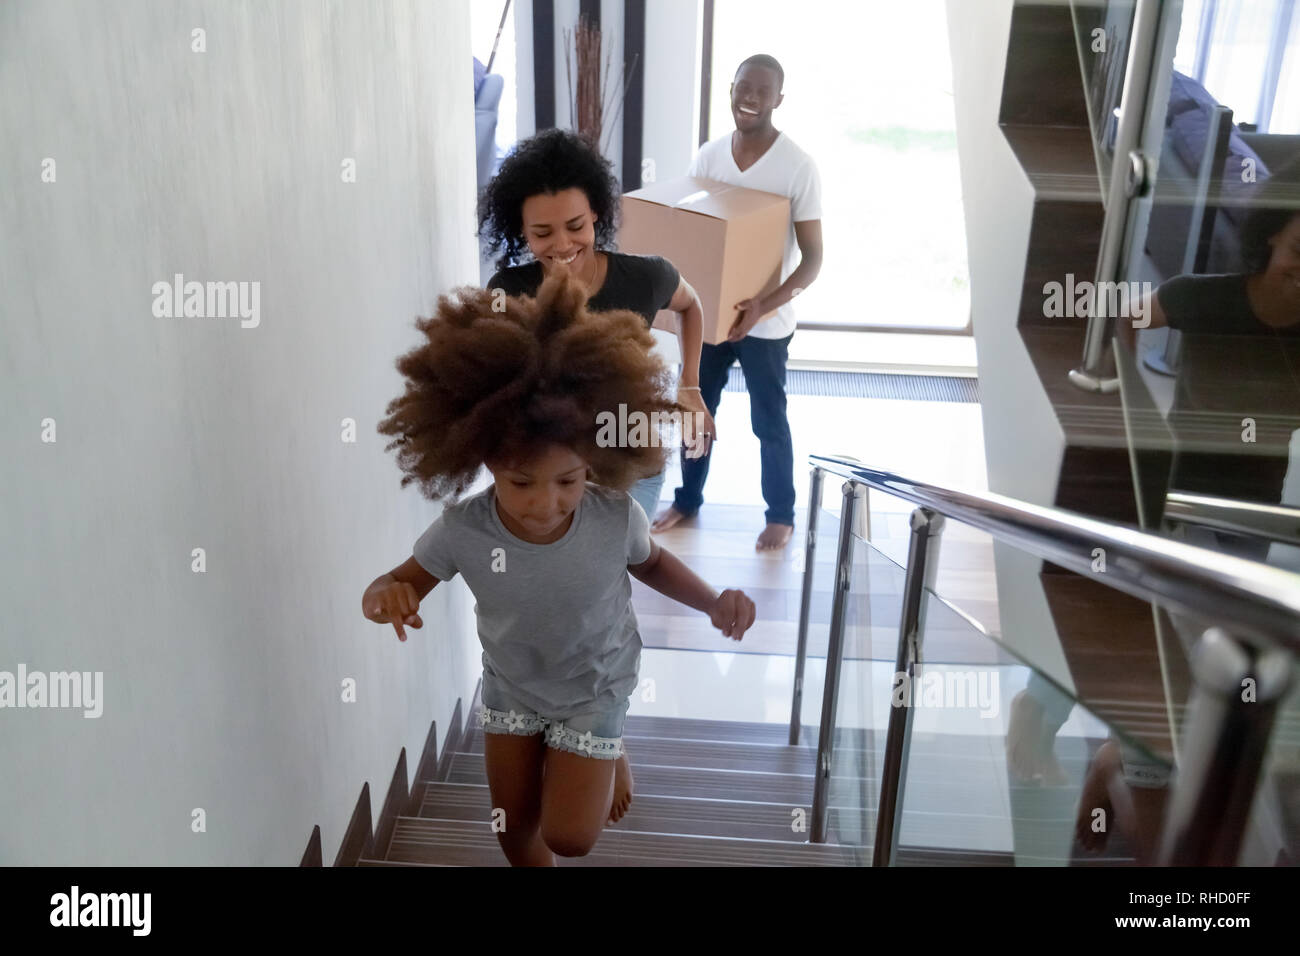 Heureux enfant noir tournant à l'étage déménagement avec les parents holding boxes Banque D'Images